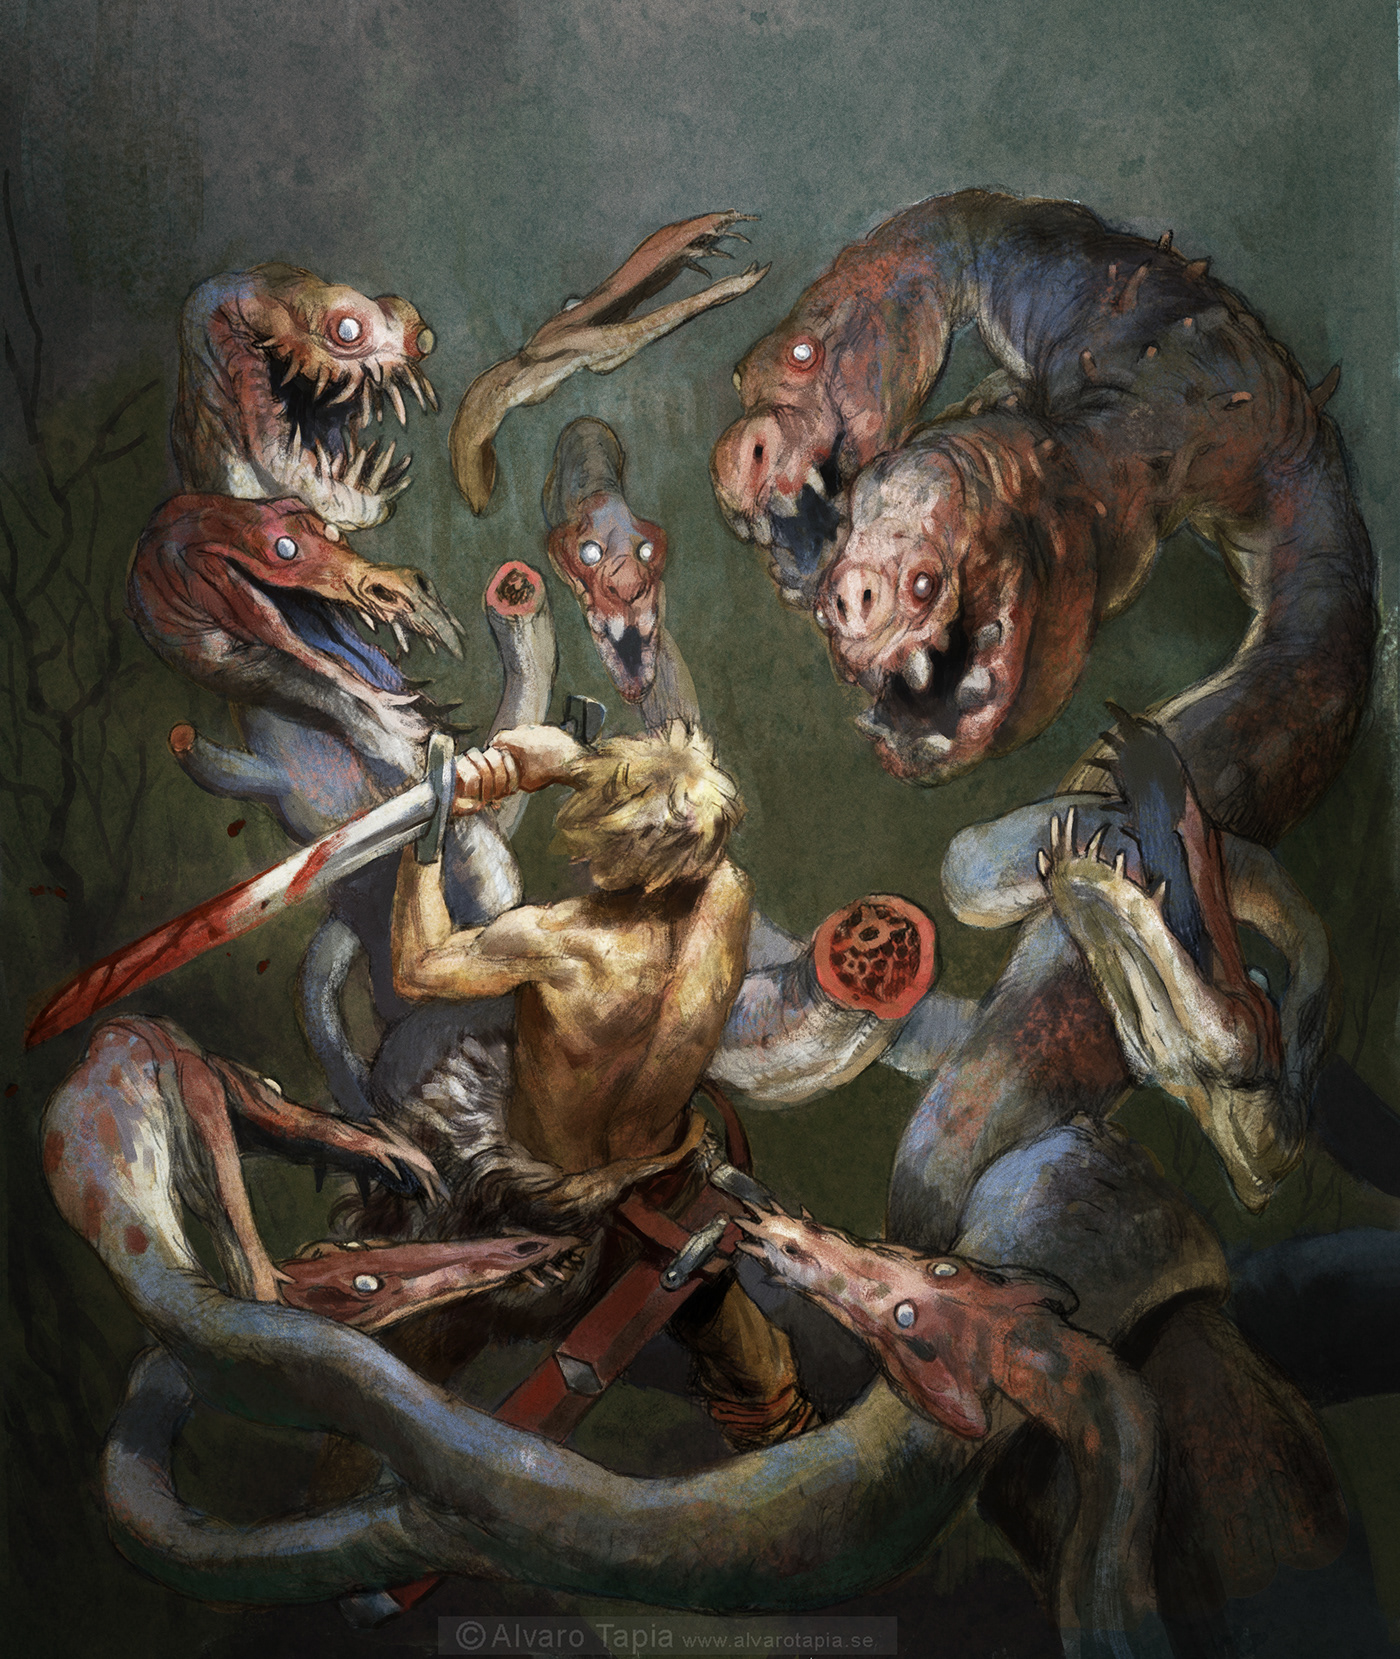 dragons mythology rpg fantasy harru potter fairlytale folktale bookillustration